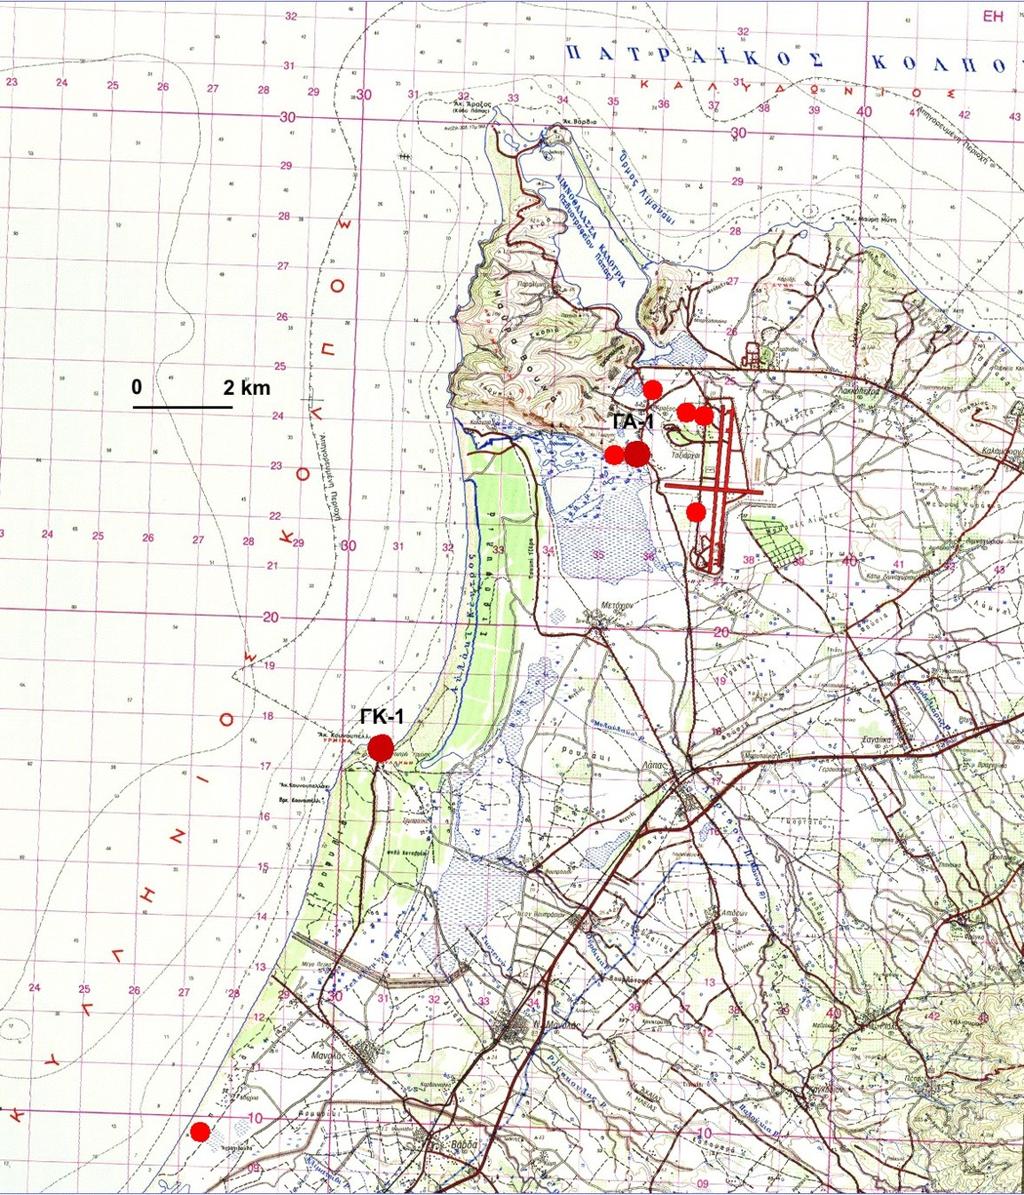 Εικόνα 8: Τοπογραφικός χάρτης των θέσεων δειγματοληψίας και γεωτρήσεων σε περιοχές Κουνουπελίου και Αράξου 5.1.